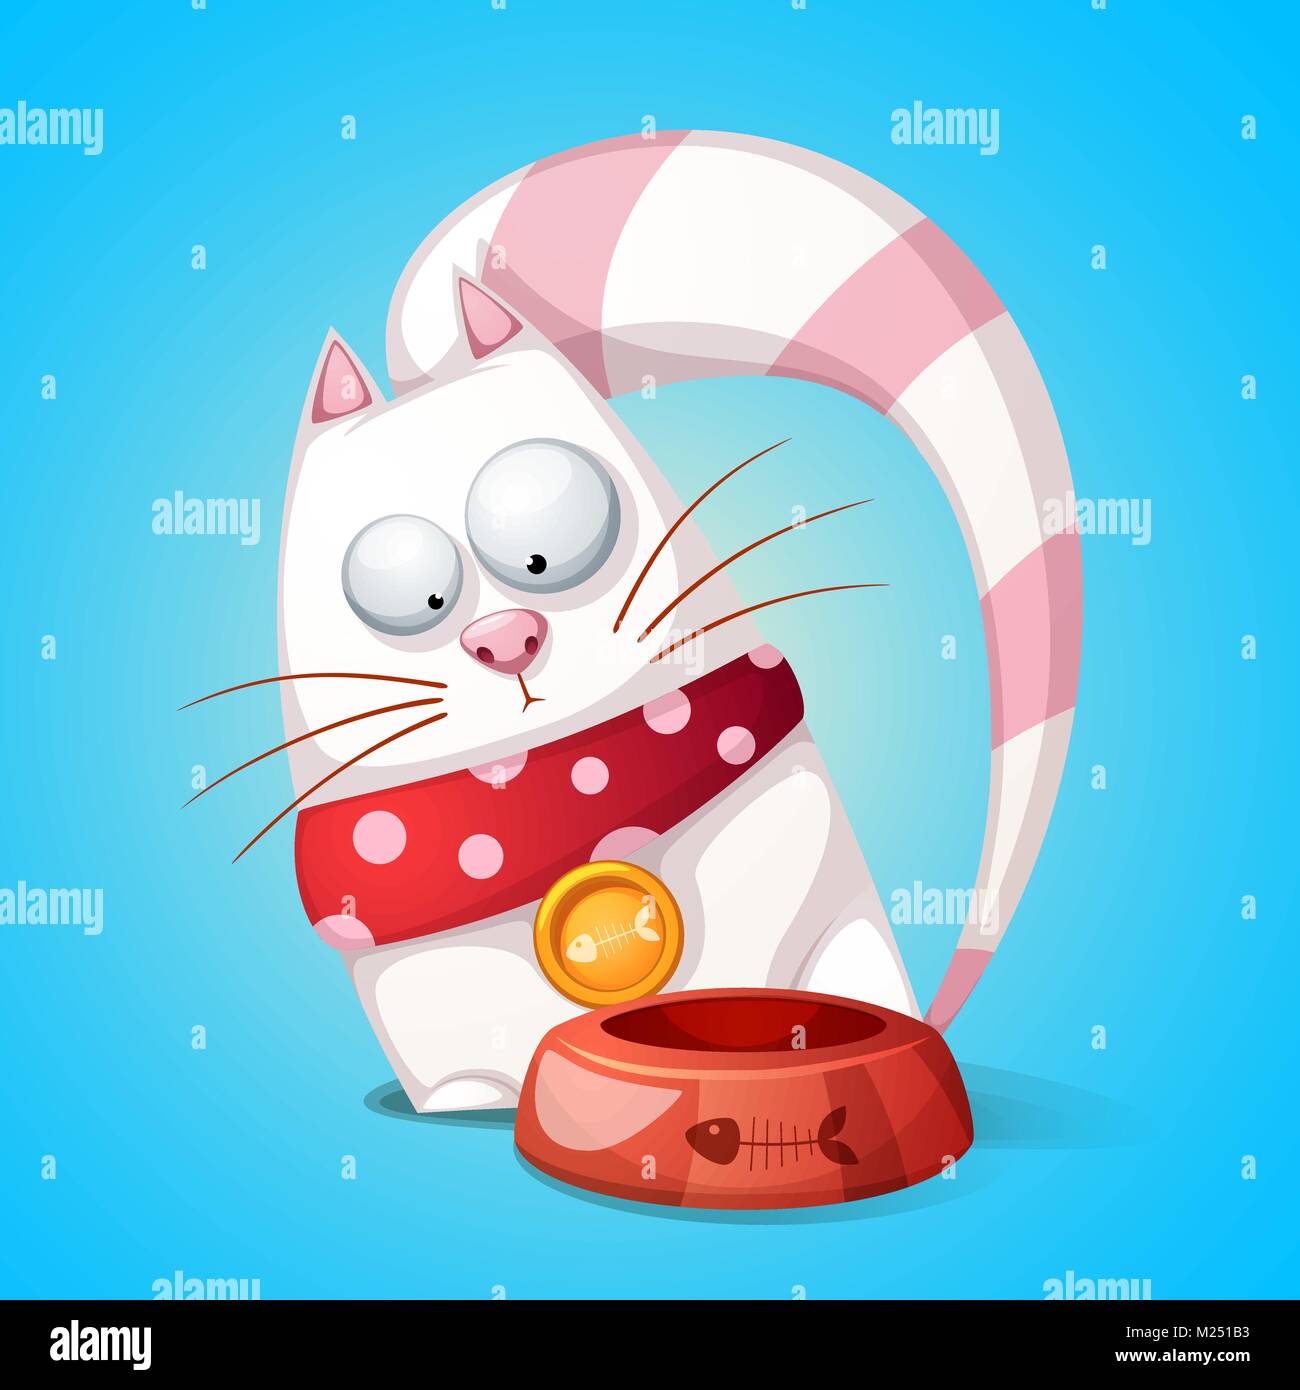 Lustig, niedliche Zeichentrickfigur Katzen. Tier frisst aus der Schüssel  Stock-Vektorgrafik - Alamy